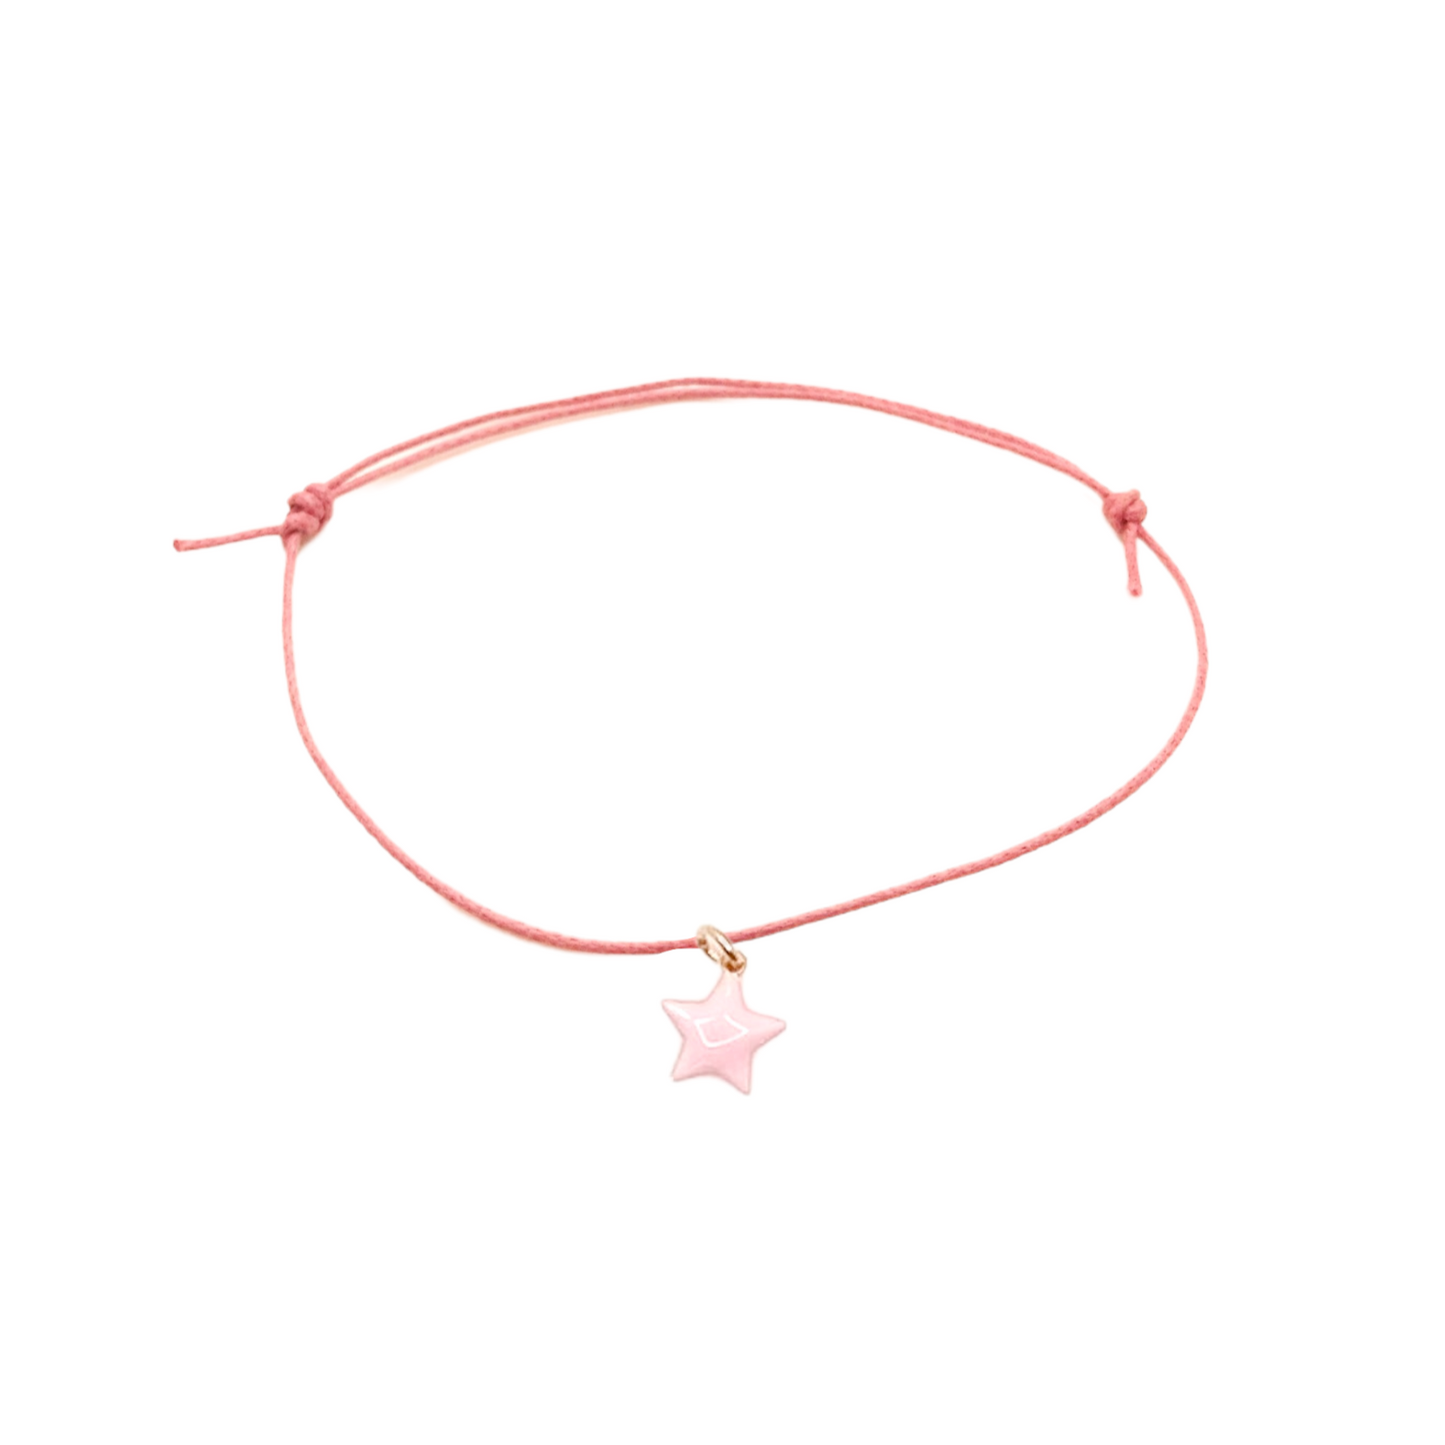 Bracciale star rosa con cordino cerato + ciondolo smaltato - Personalizzabile